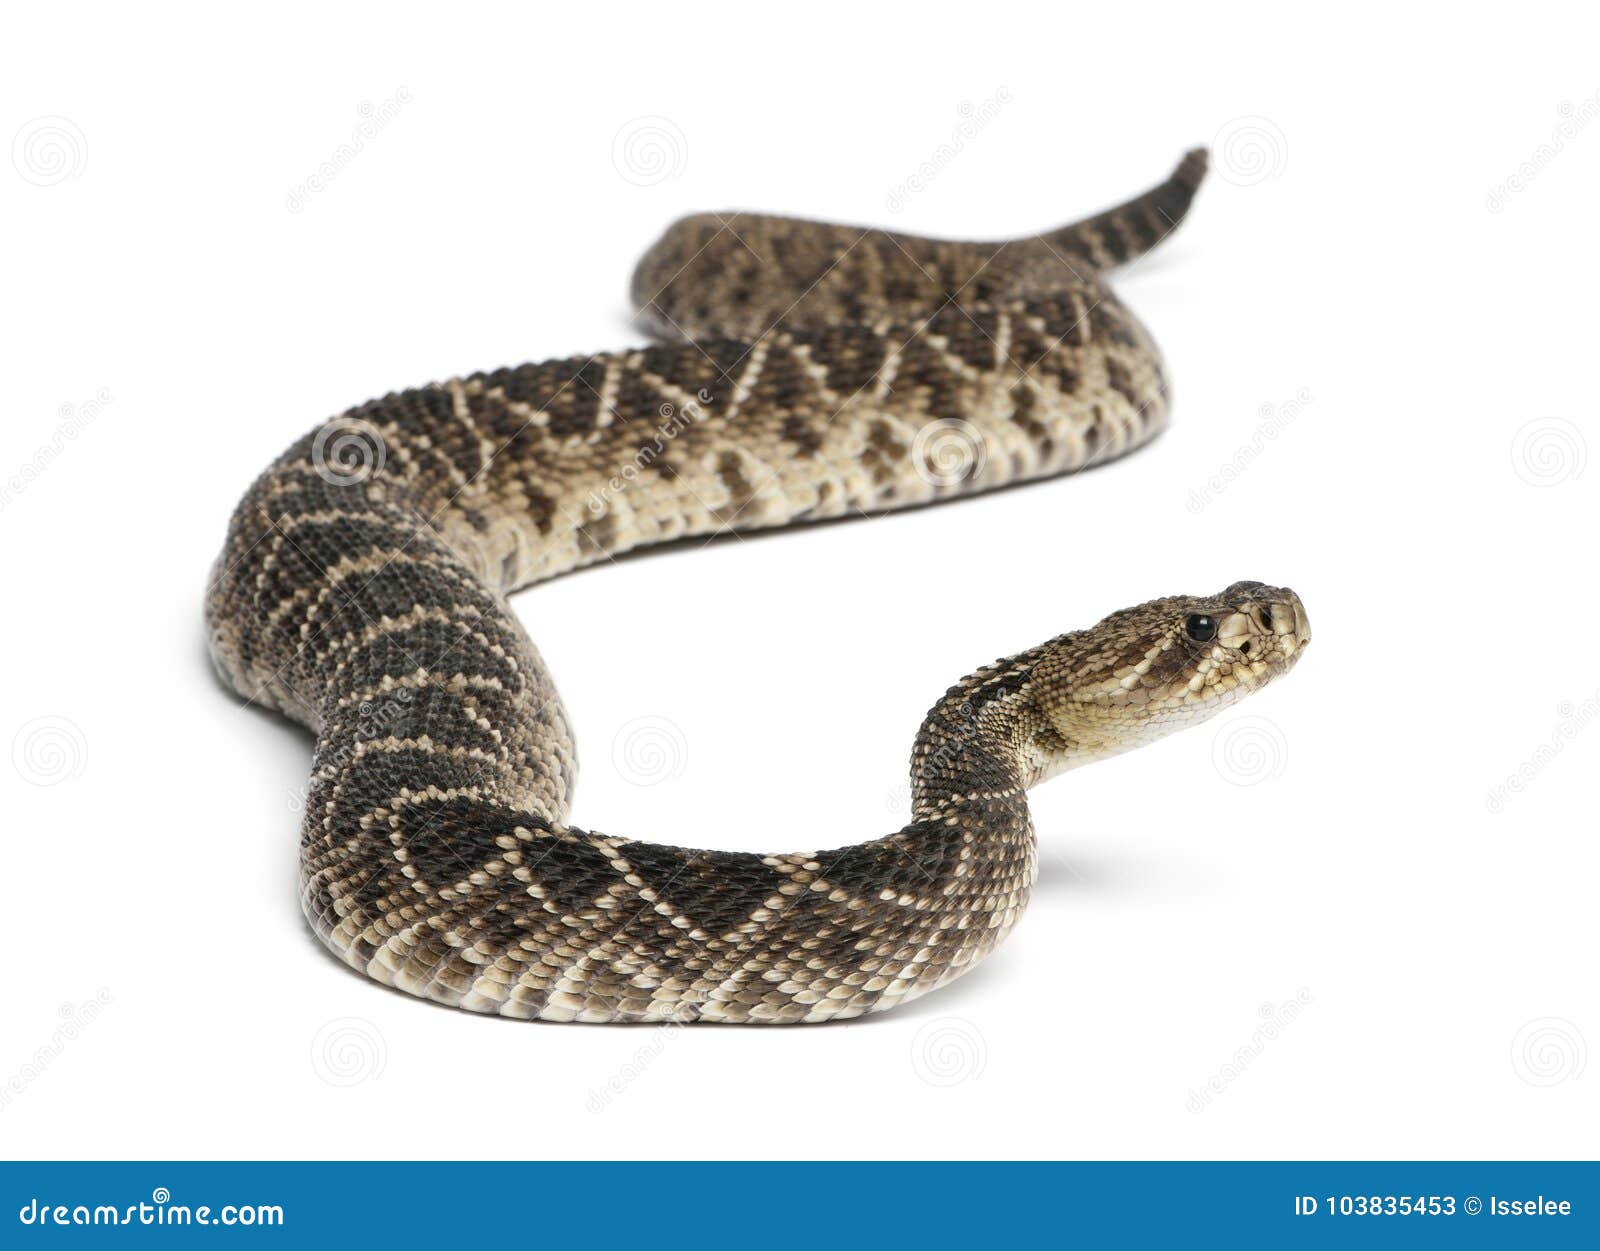 eastern diamondback rattlesnake - crotalus adamanteus , poisonous, white background